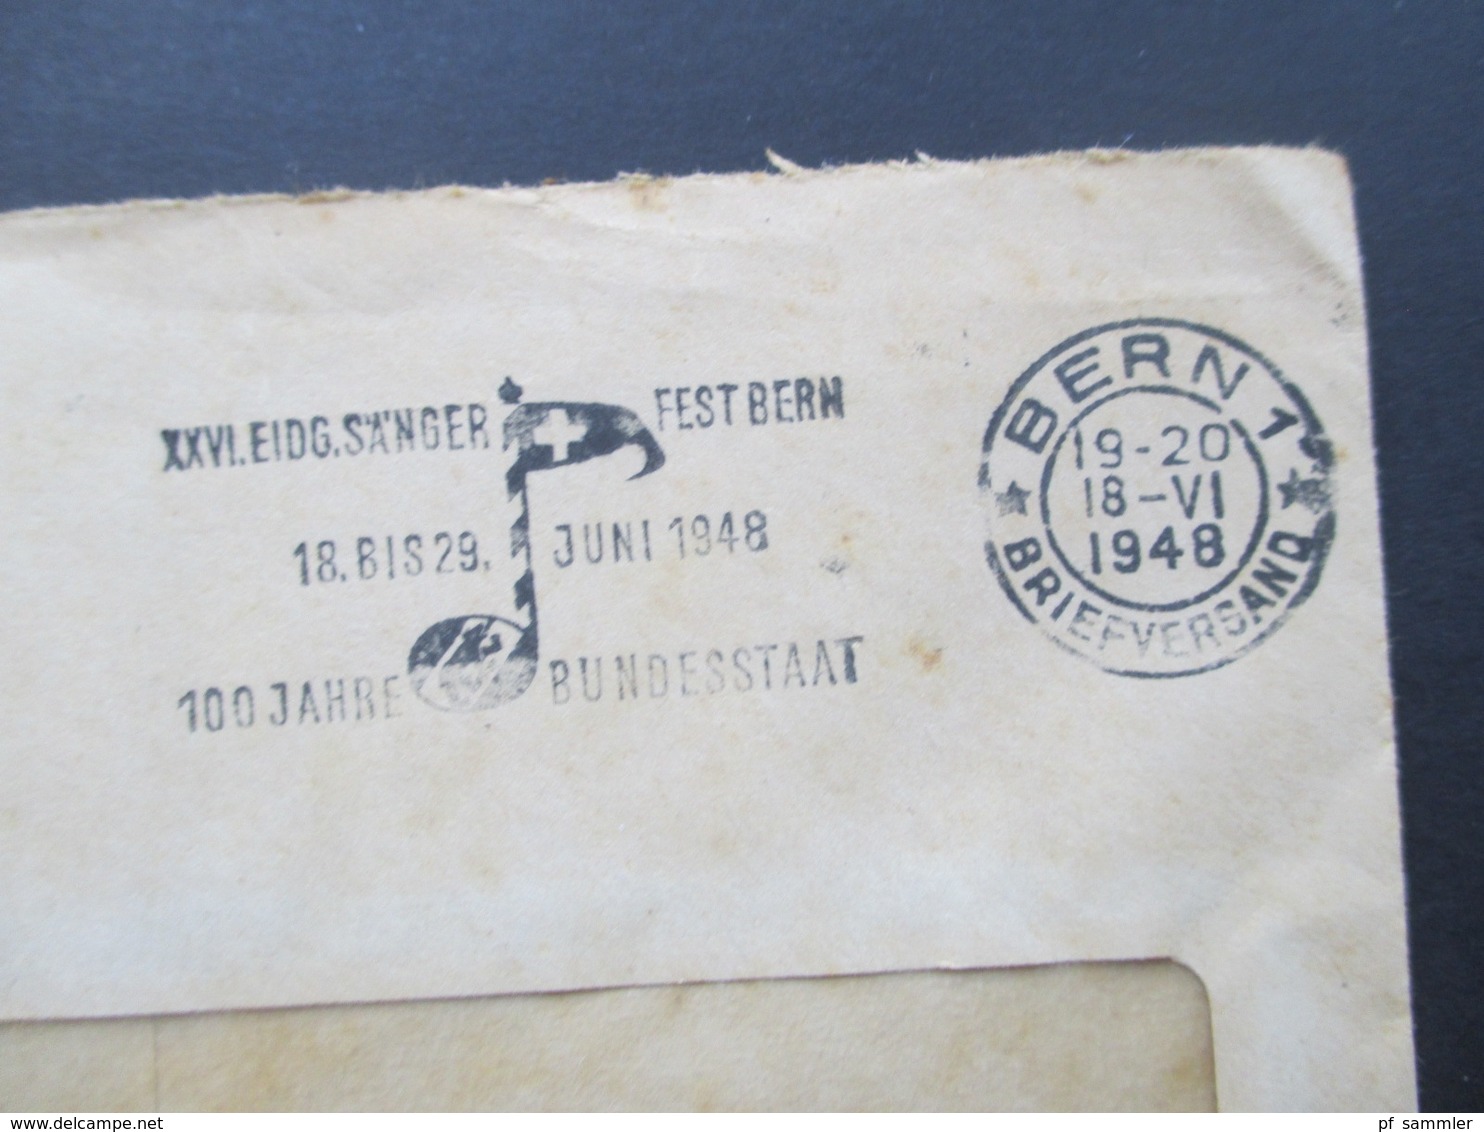 Schweiz 1948 Officiel Eidgenössisches Militärdepartement Abteilung Für Luftschutz. Stempel Bern 100 Jahre Bundesstaat - Briefe U. Dokumente